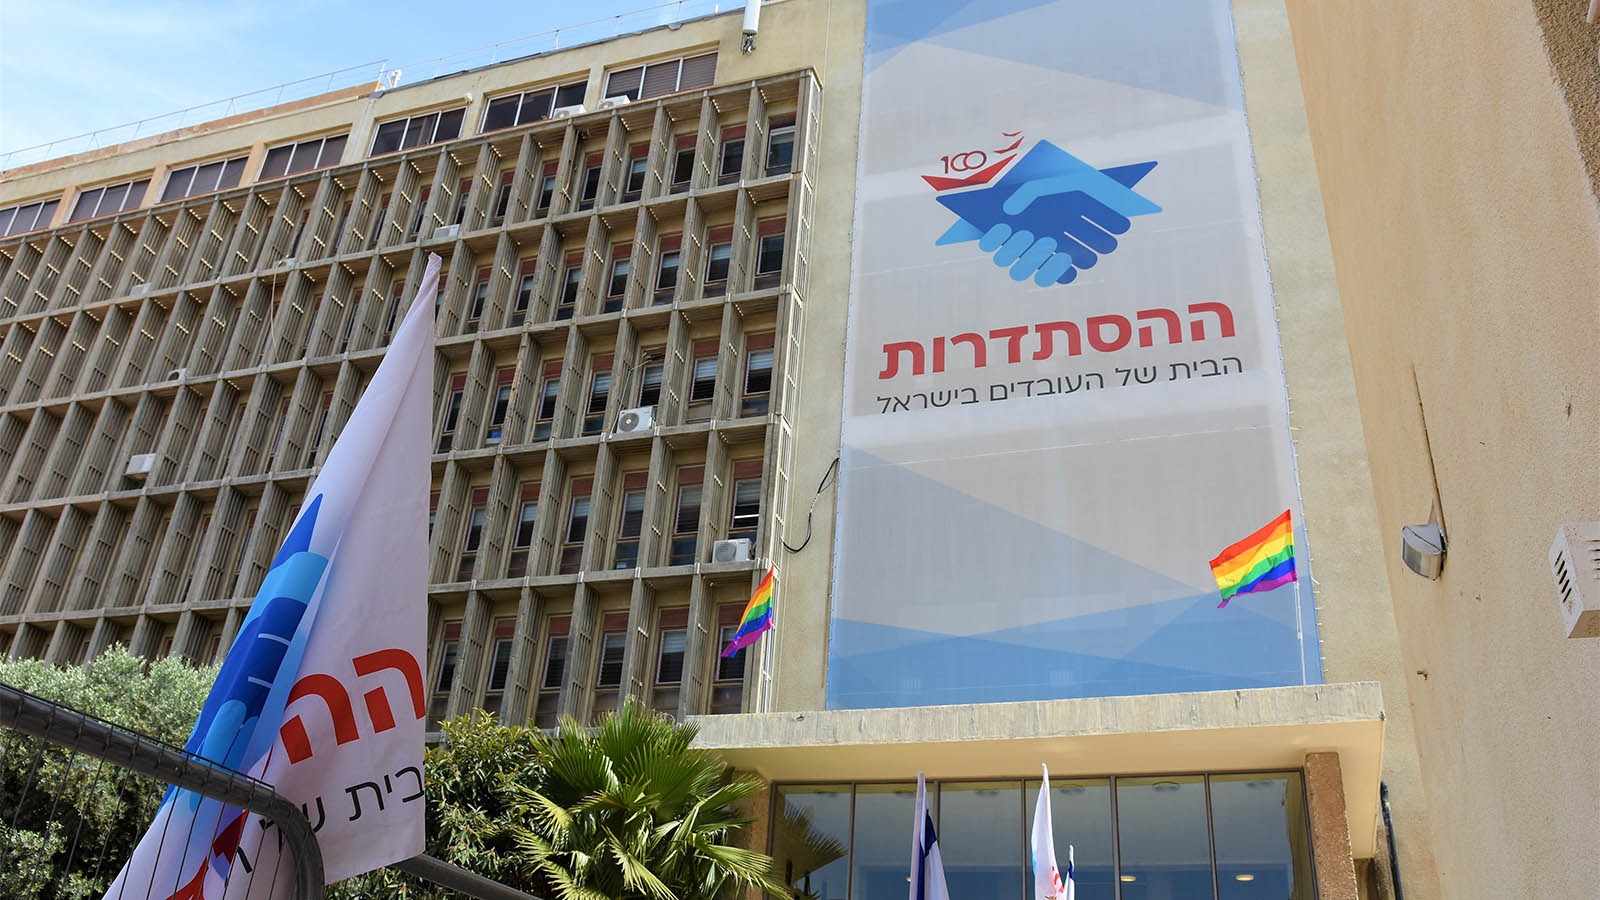 علم الفخر في مبنى الهستدروت في تل أبيب (تصوير: بإذن من الهستدروت)